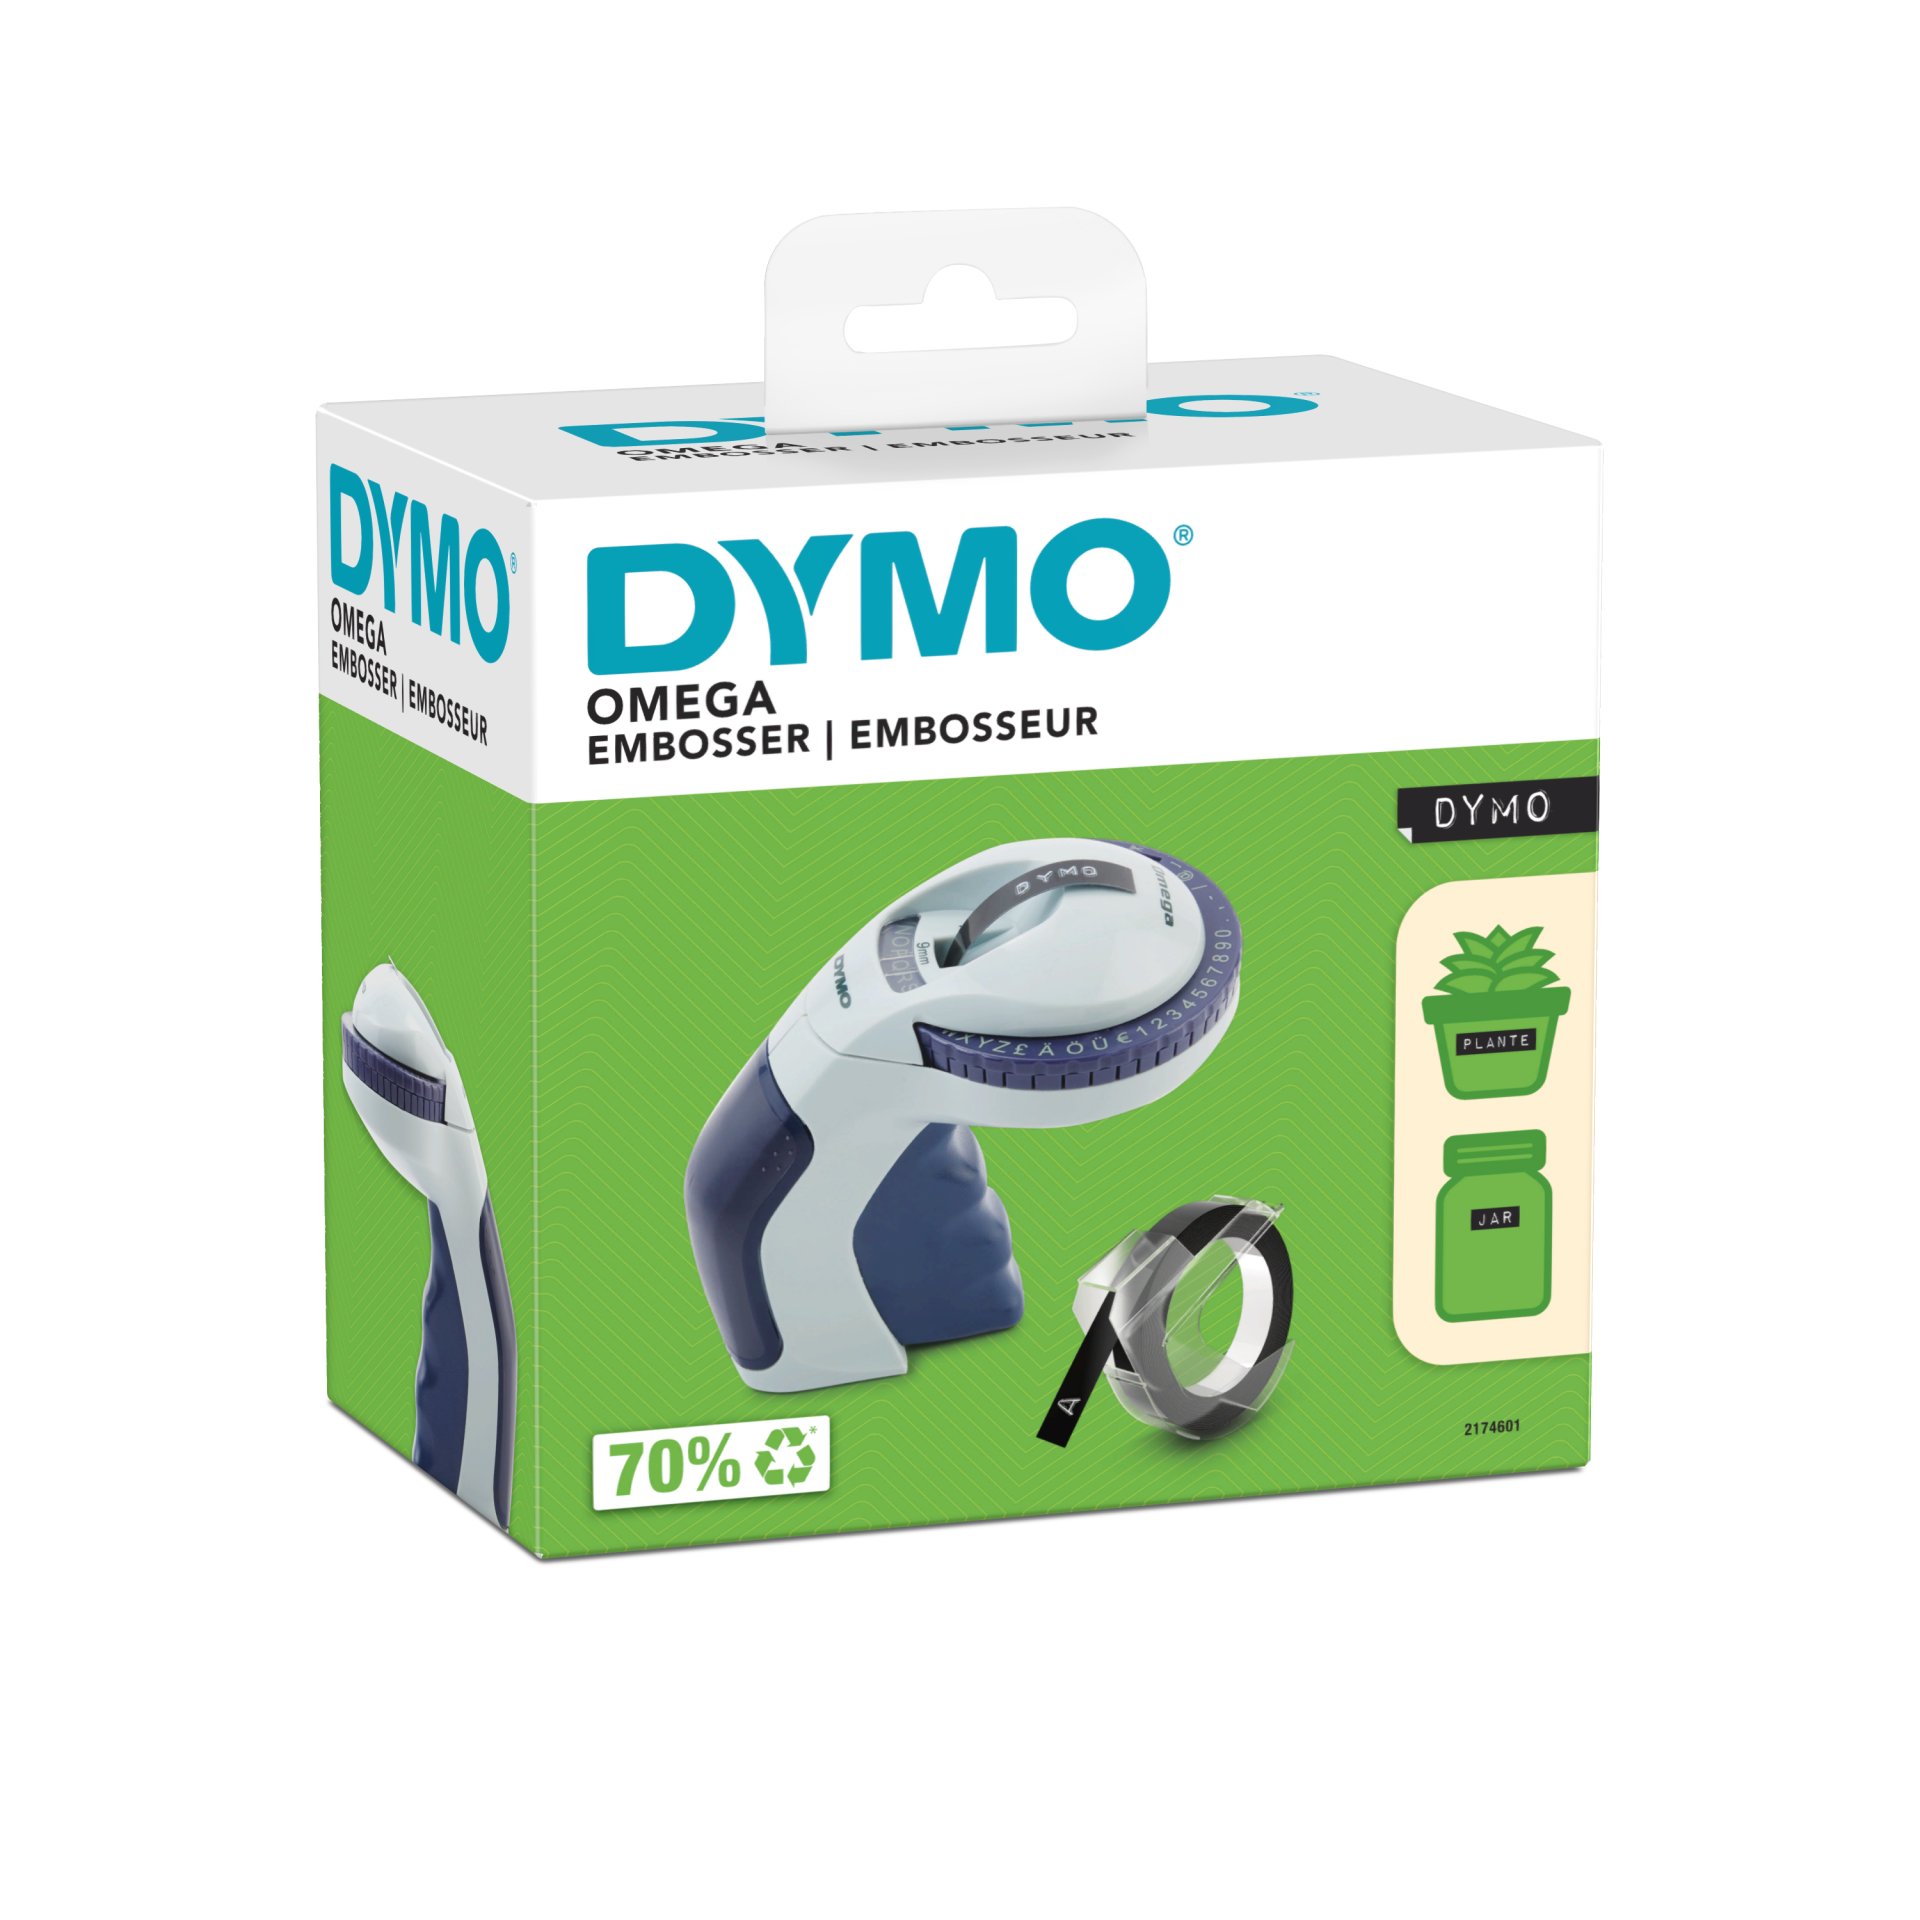 Dymo Omega Embosser Label Printer Blue